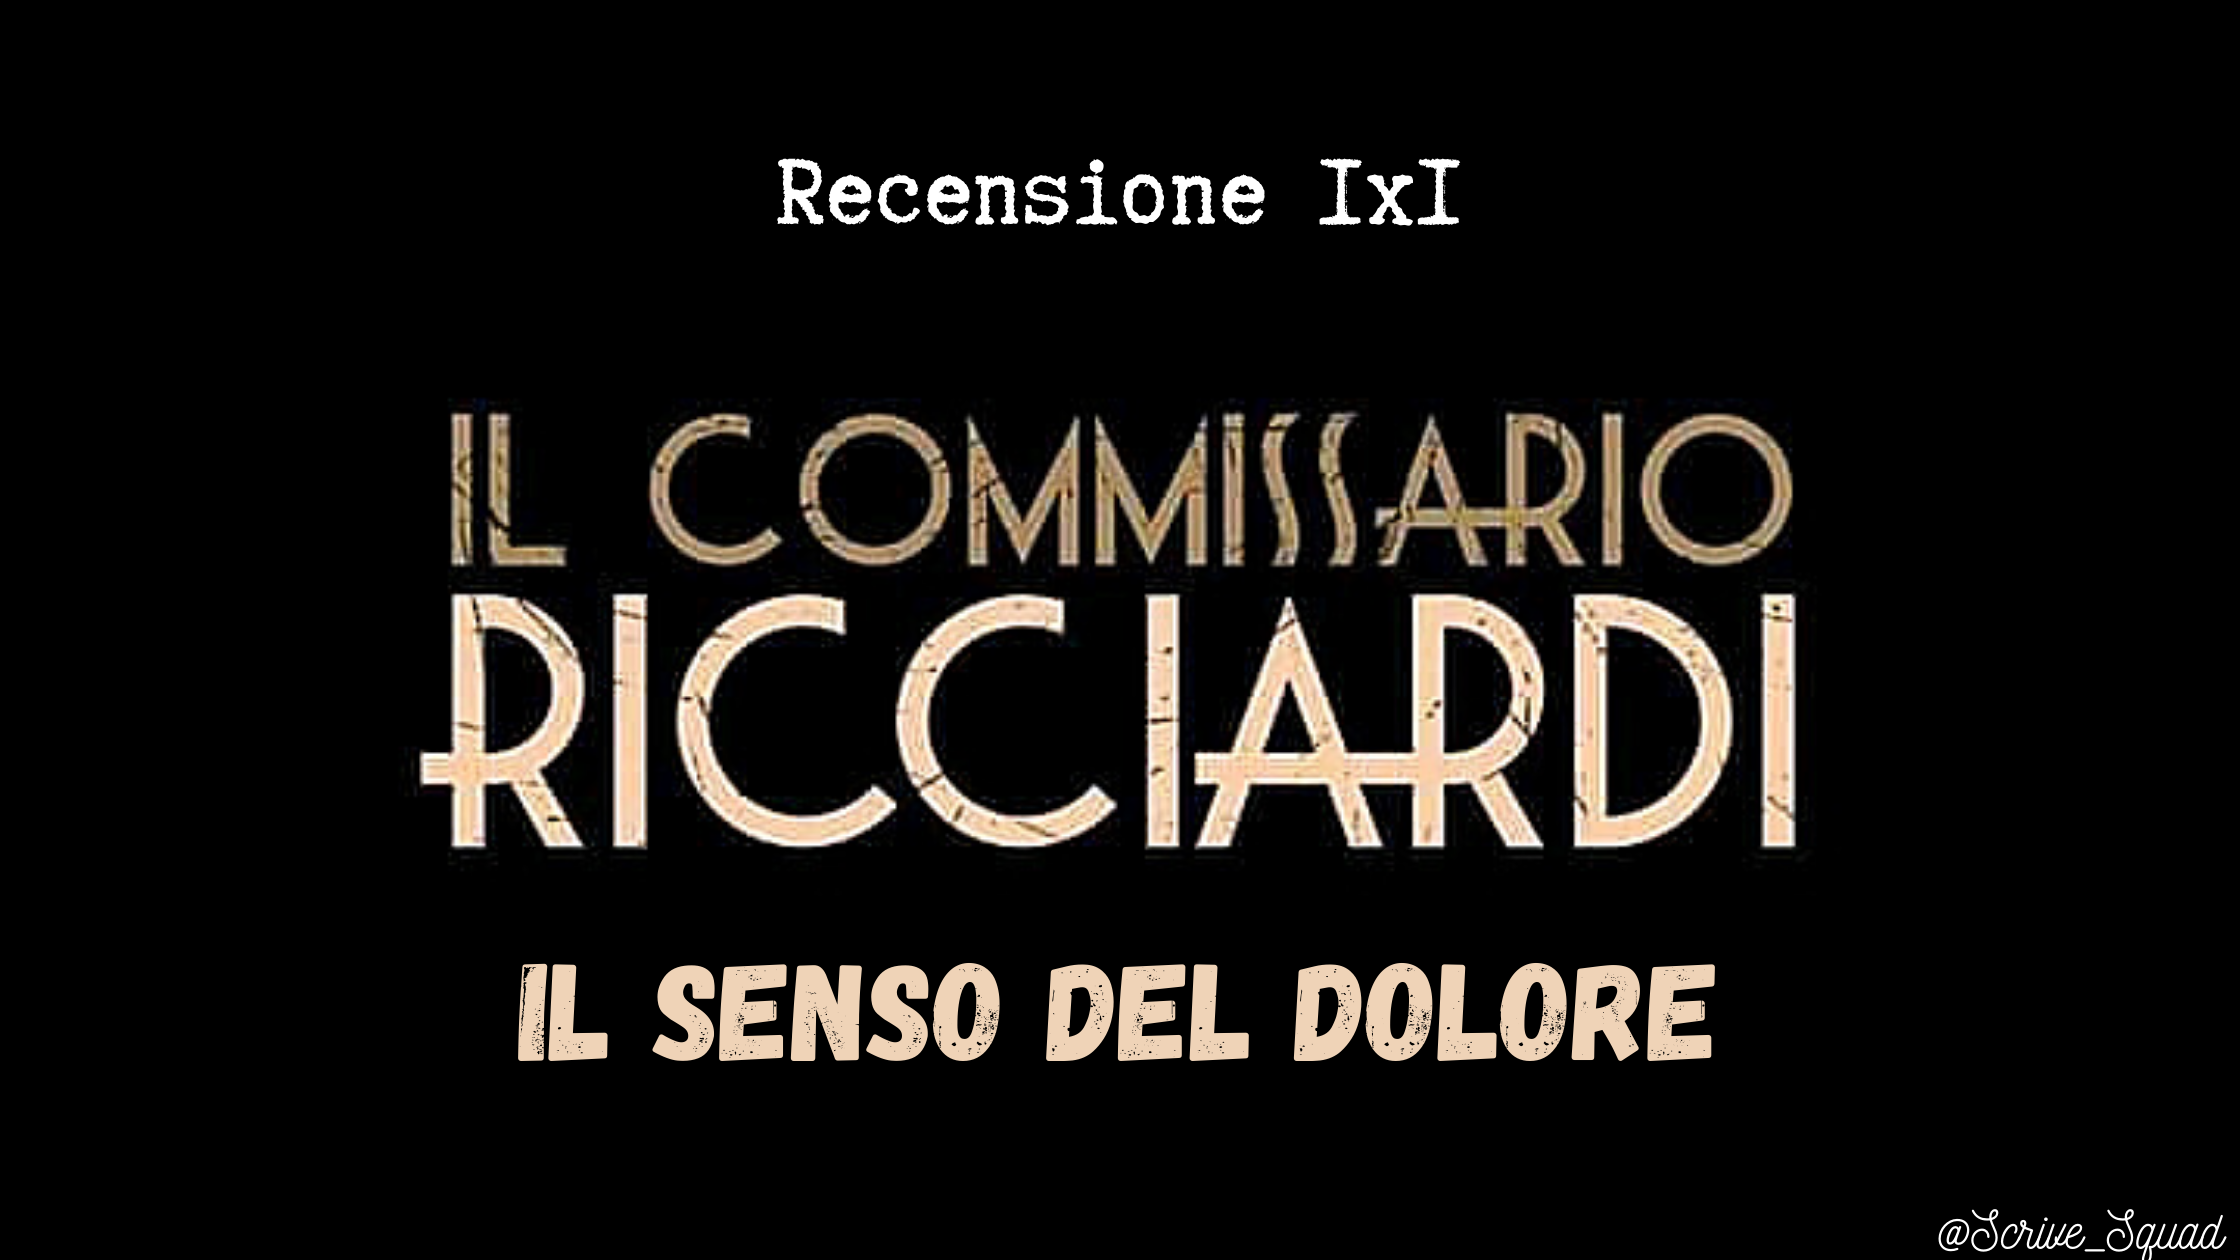 Recensione 1x1 Il commissario Ricciardi